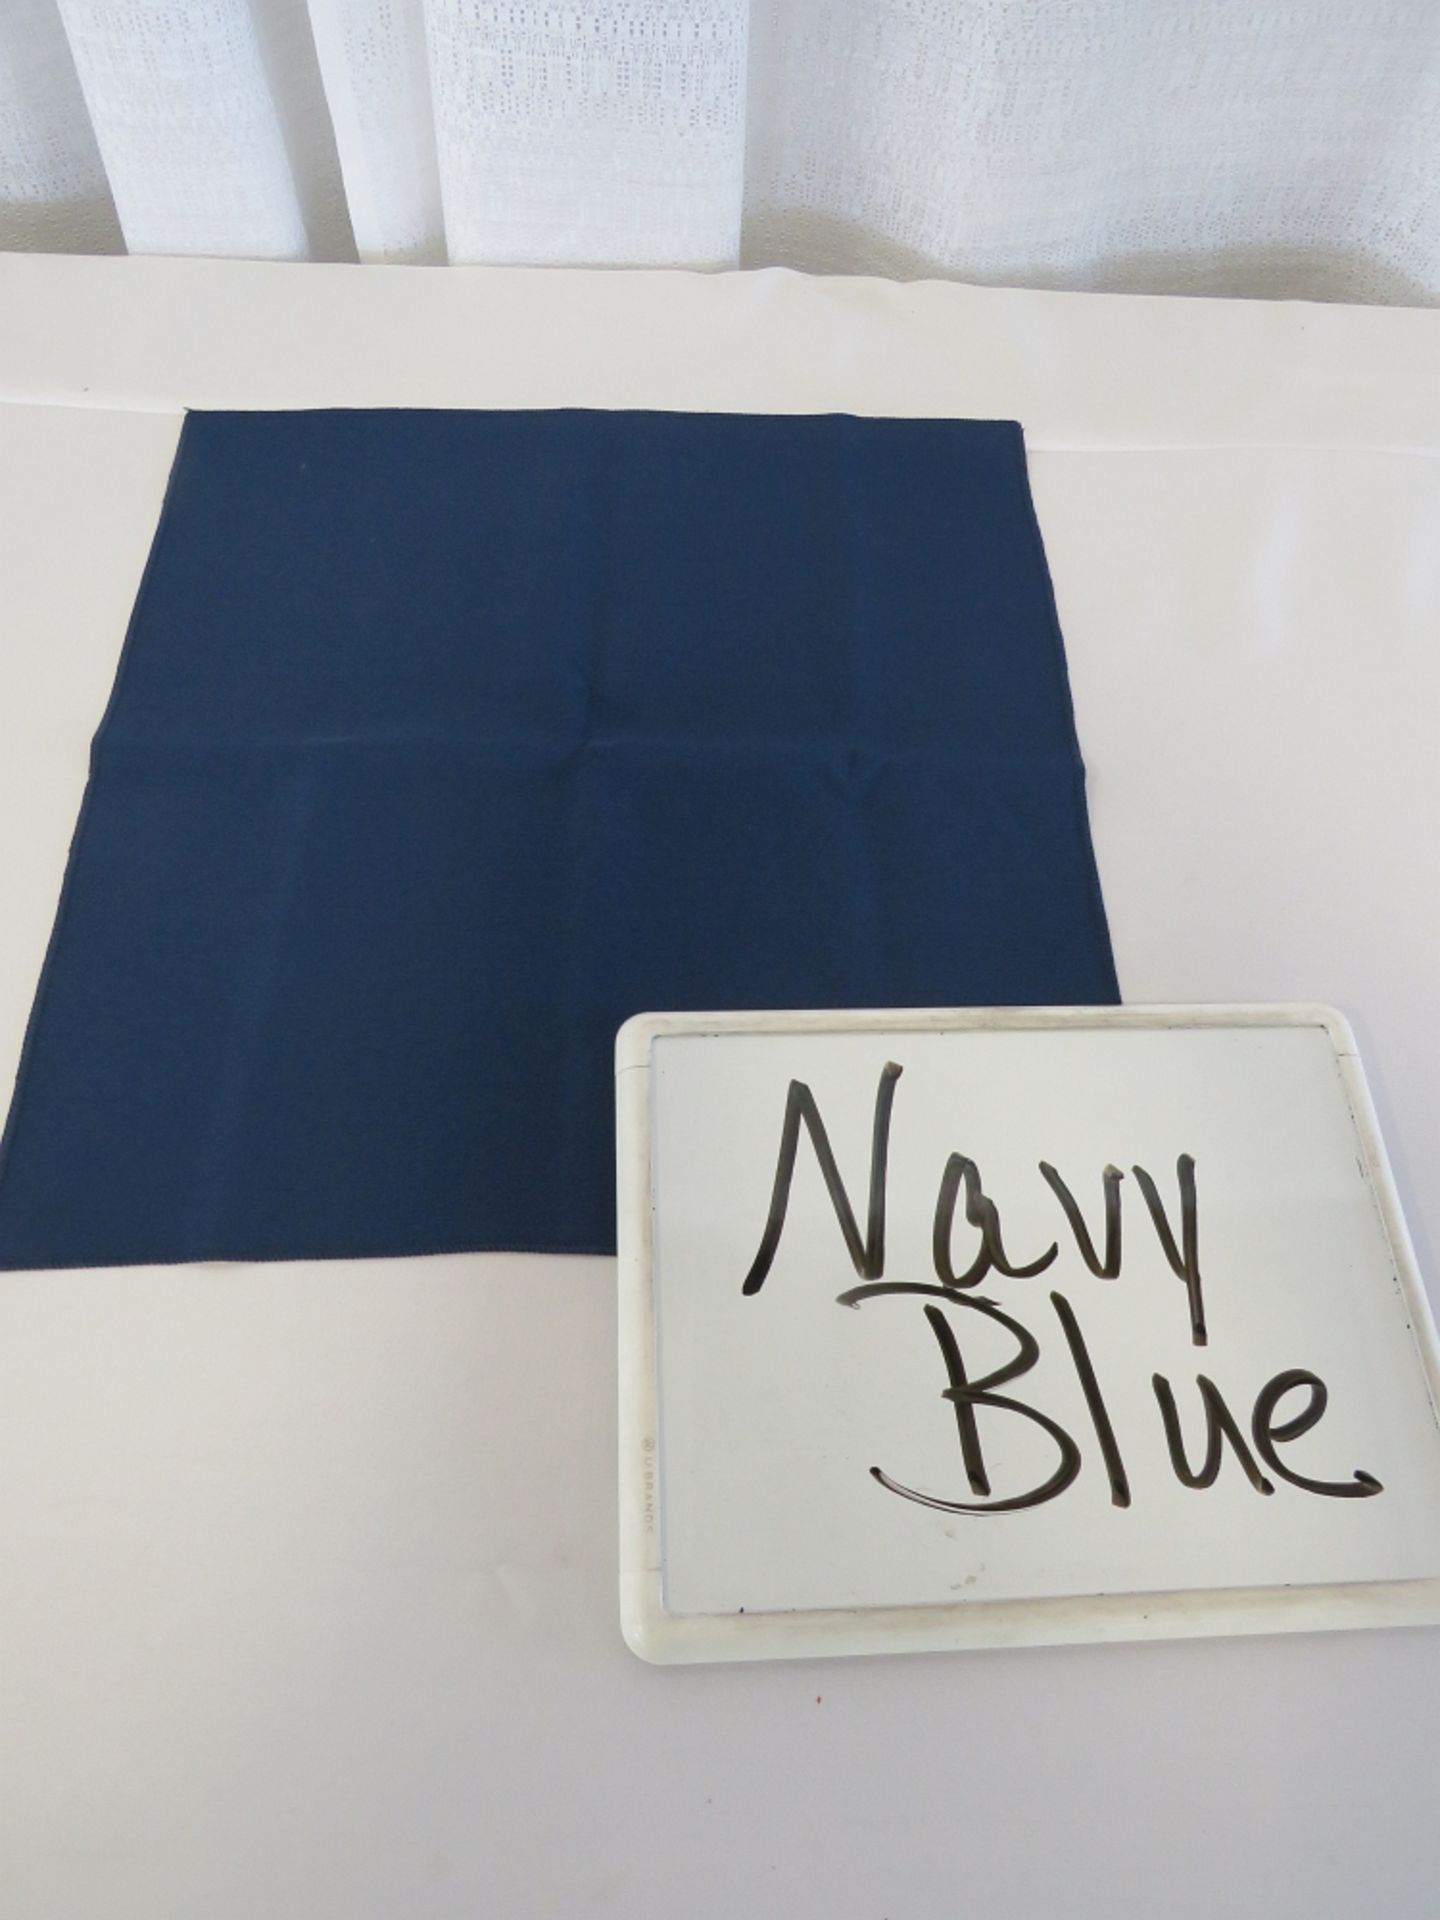 54" x 54" Tablecloth, Navy